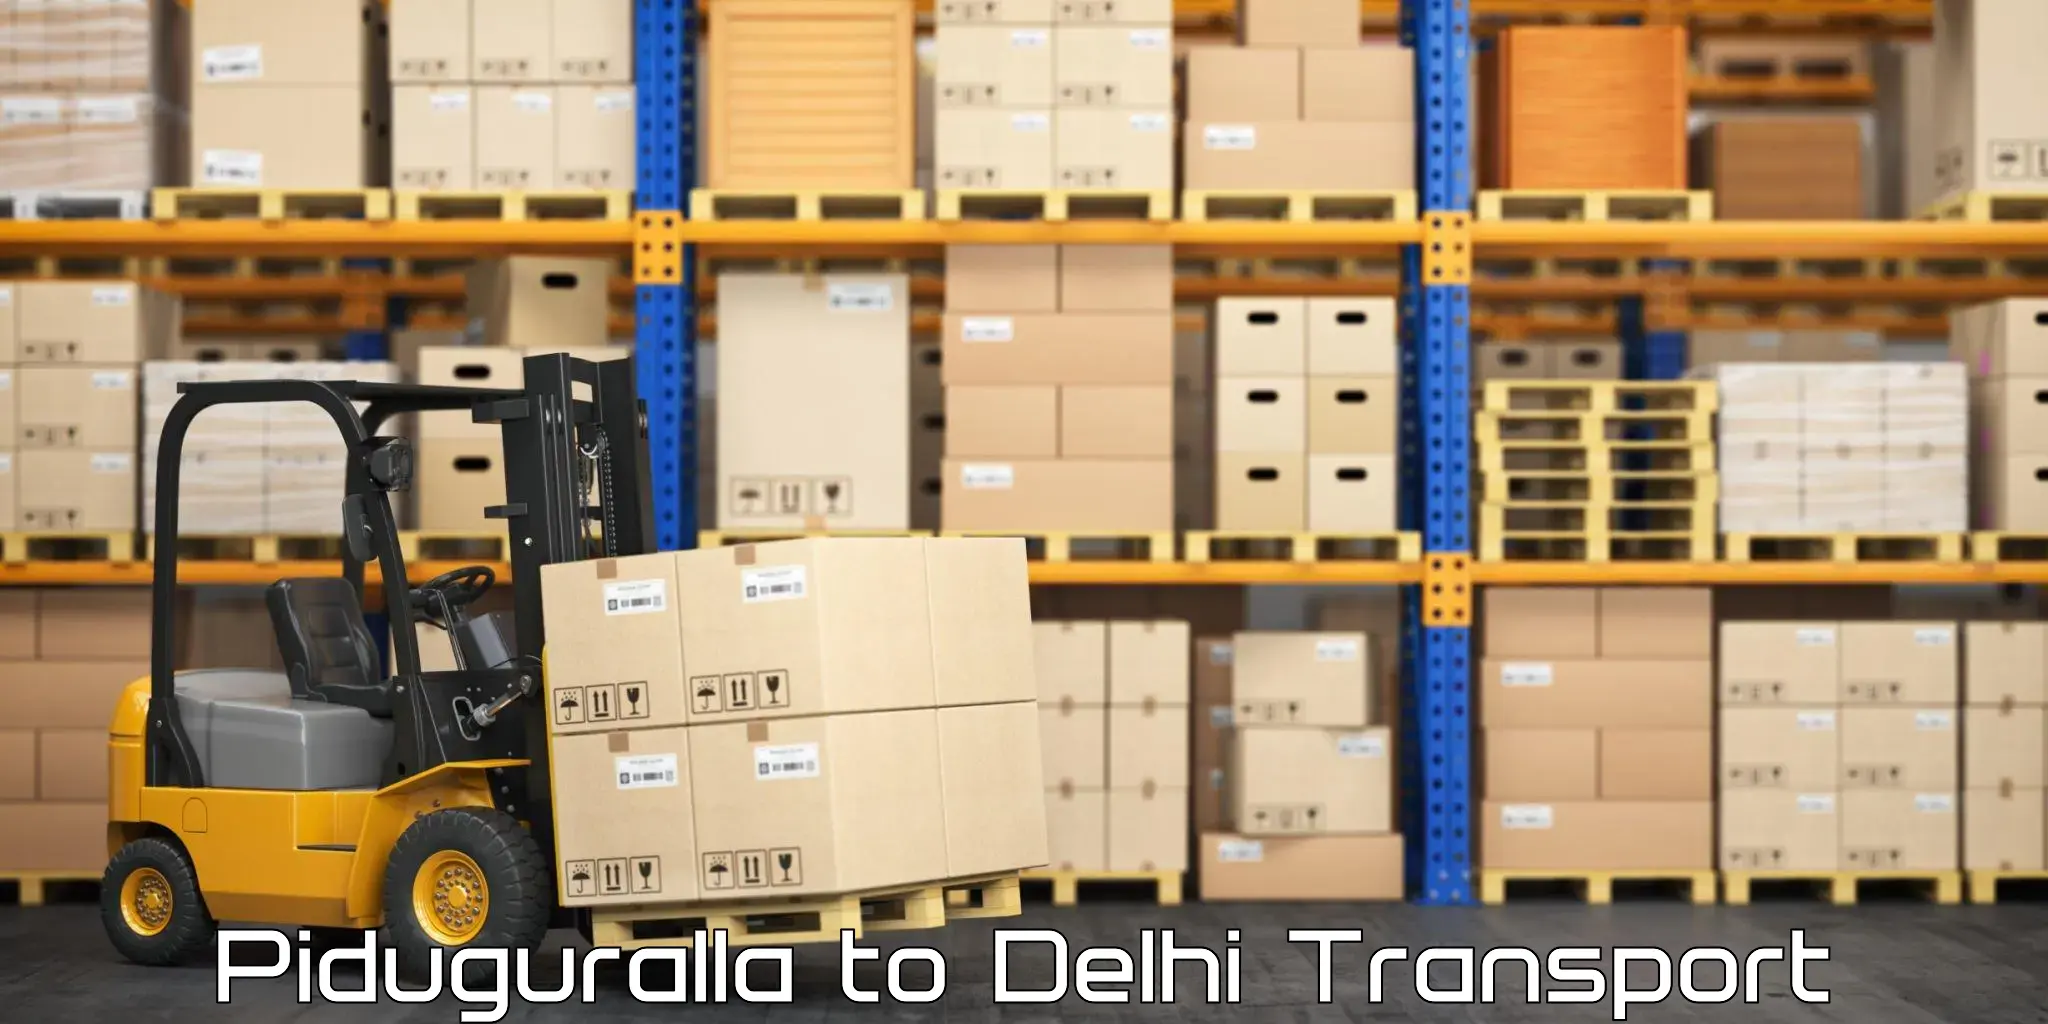 Truck transport companies in India Piduguralla to Jamia Millia Islamia New Delhi